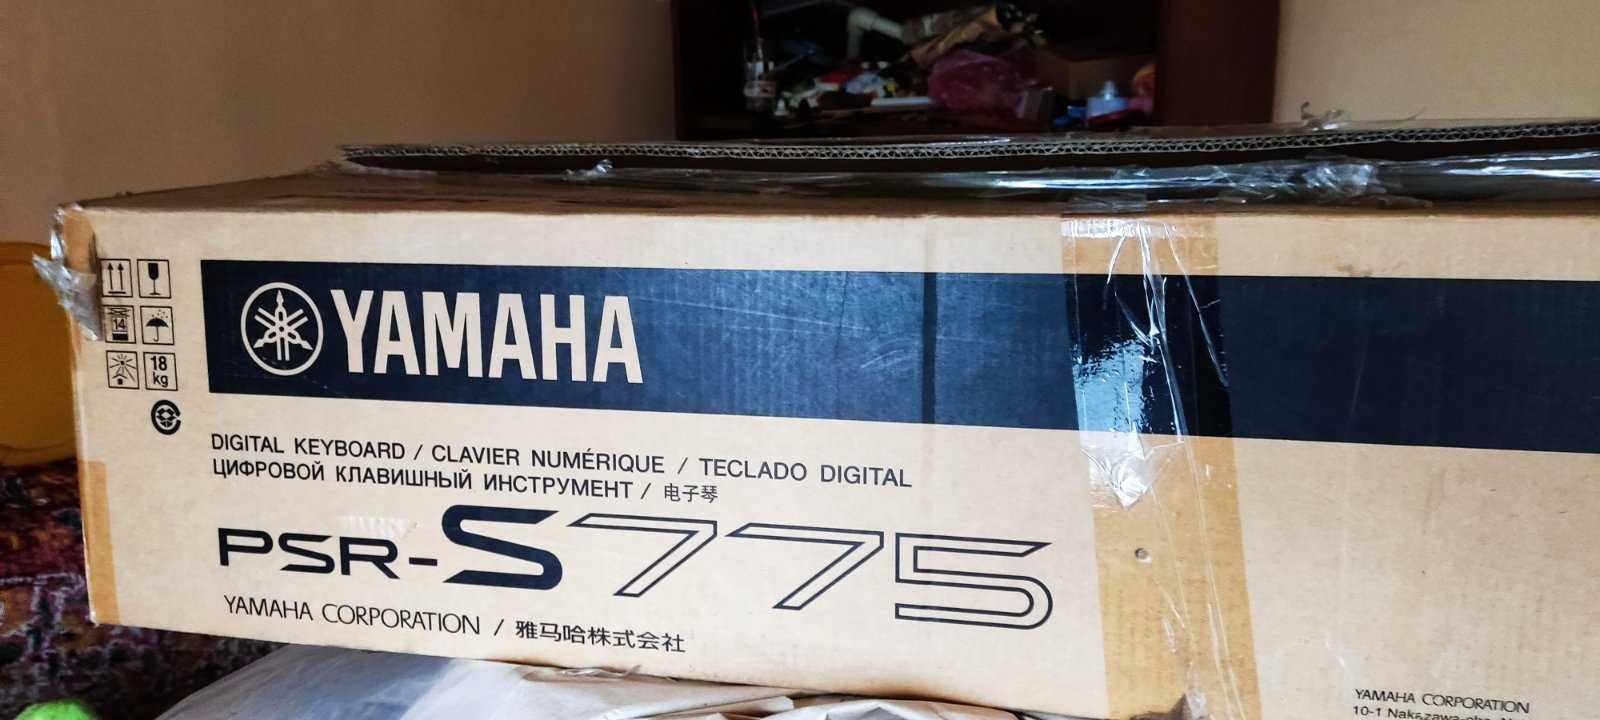 Продається Yamaha PSR S775. Ідеальний стан!+ подарунок